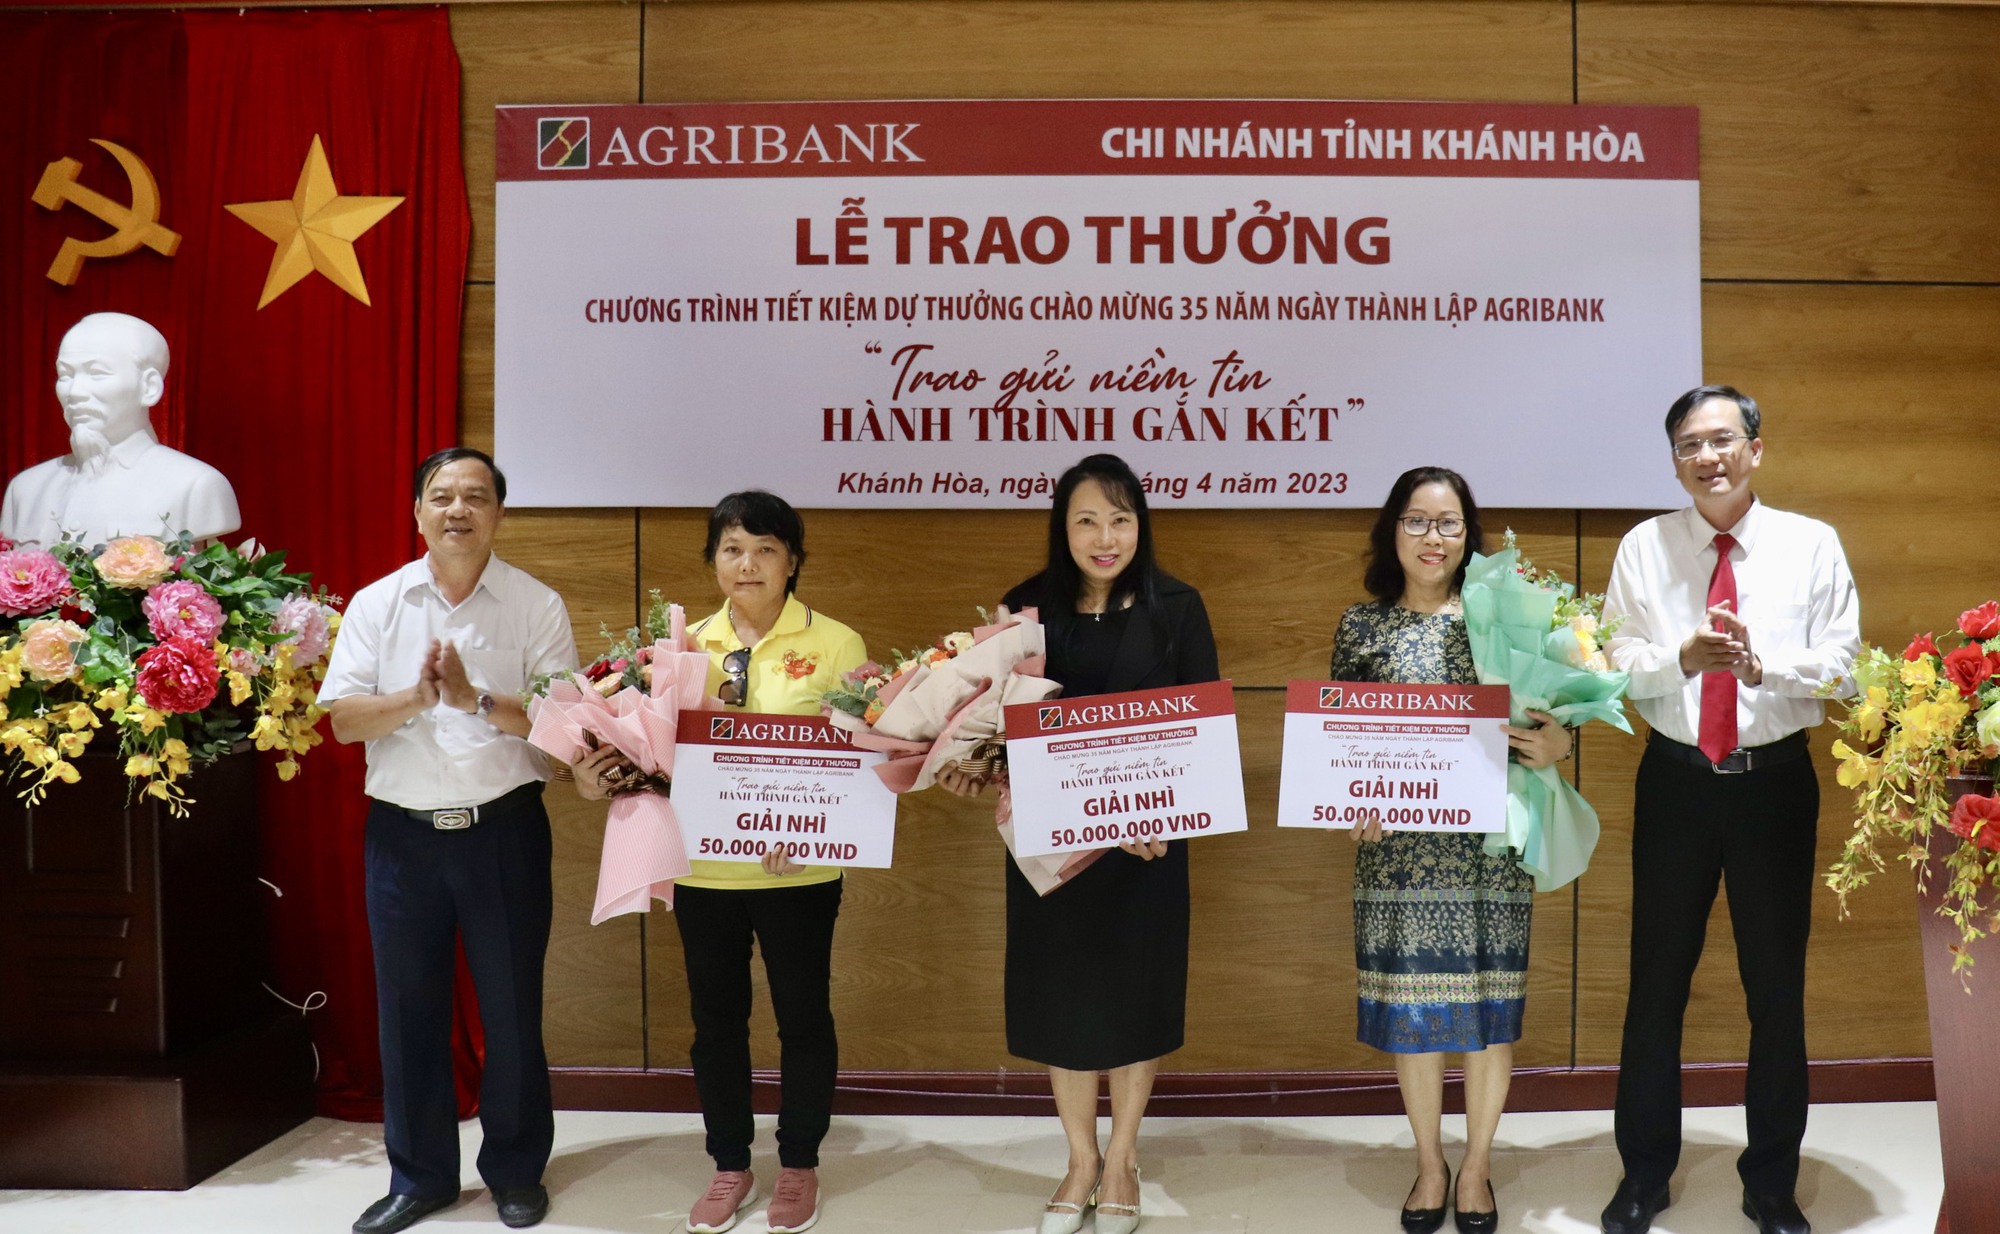 Agribank Chi nhánh tỉnh Khánh Hòa tổ chức lễ trao thưởng cho khách hàng - Ảnh 1.